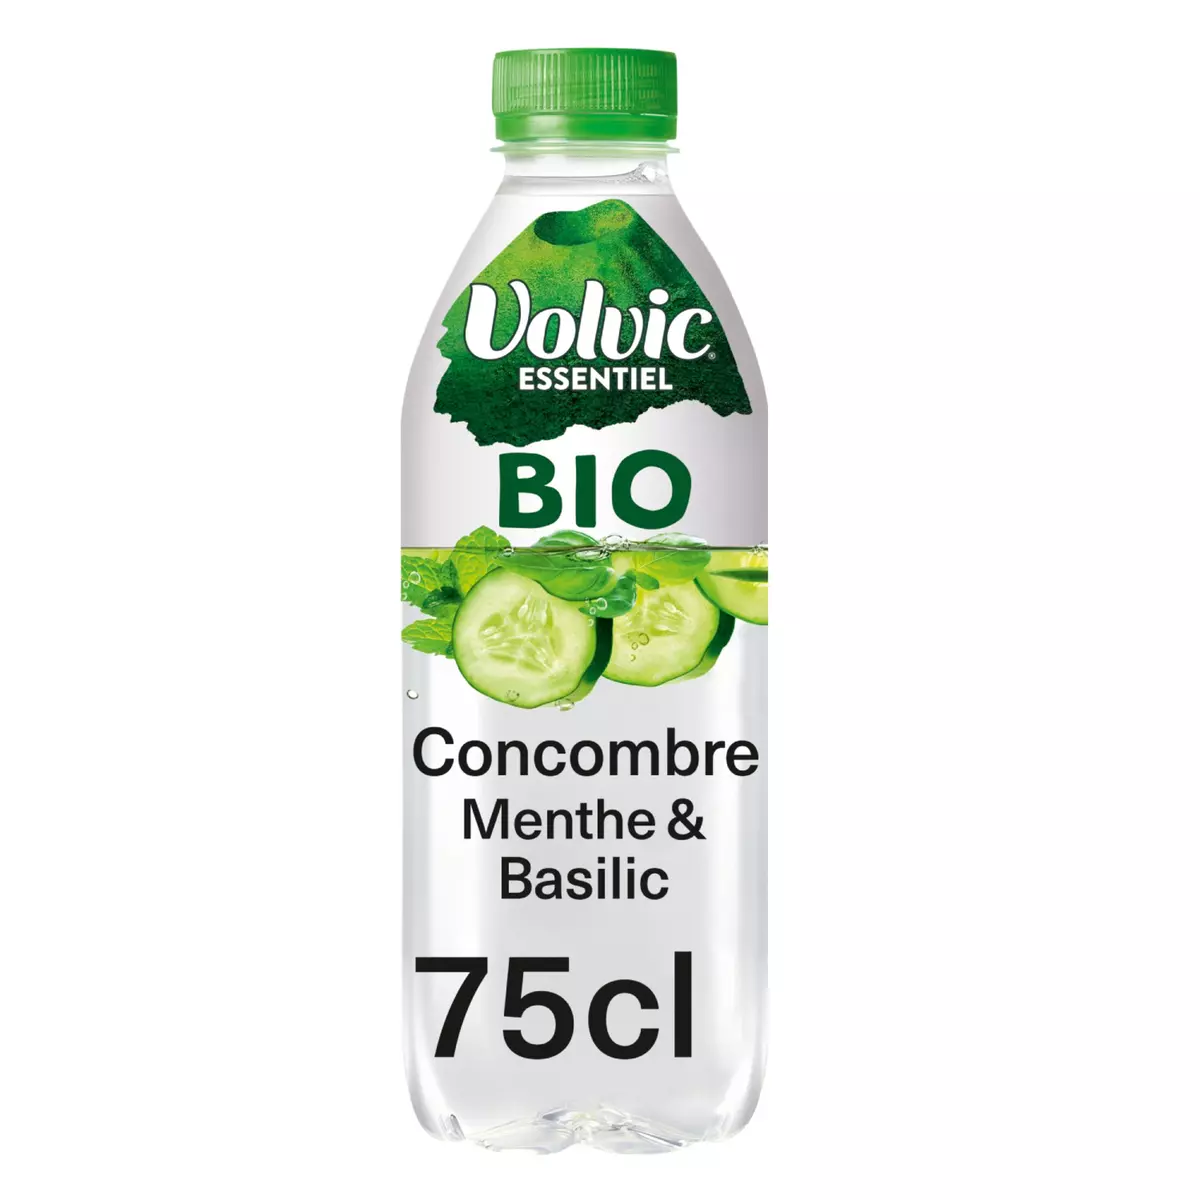 VOLVIC Eau aromatisée concombre menthe basilic bio 75cl